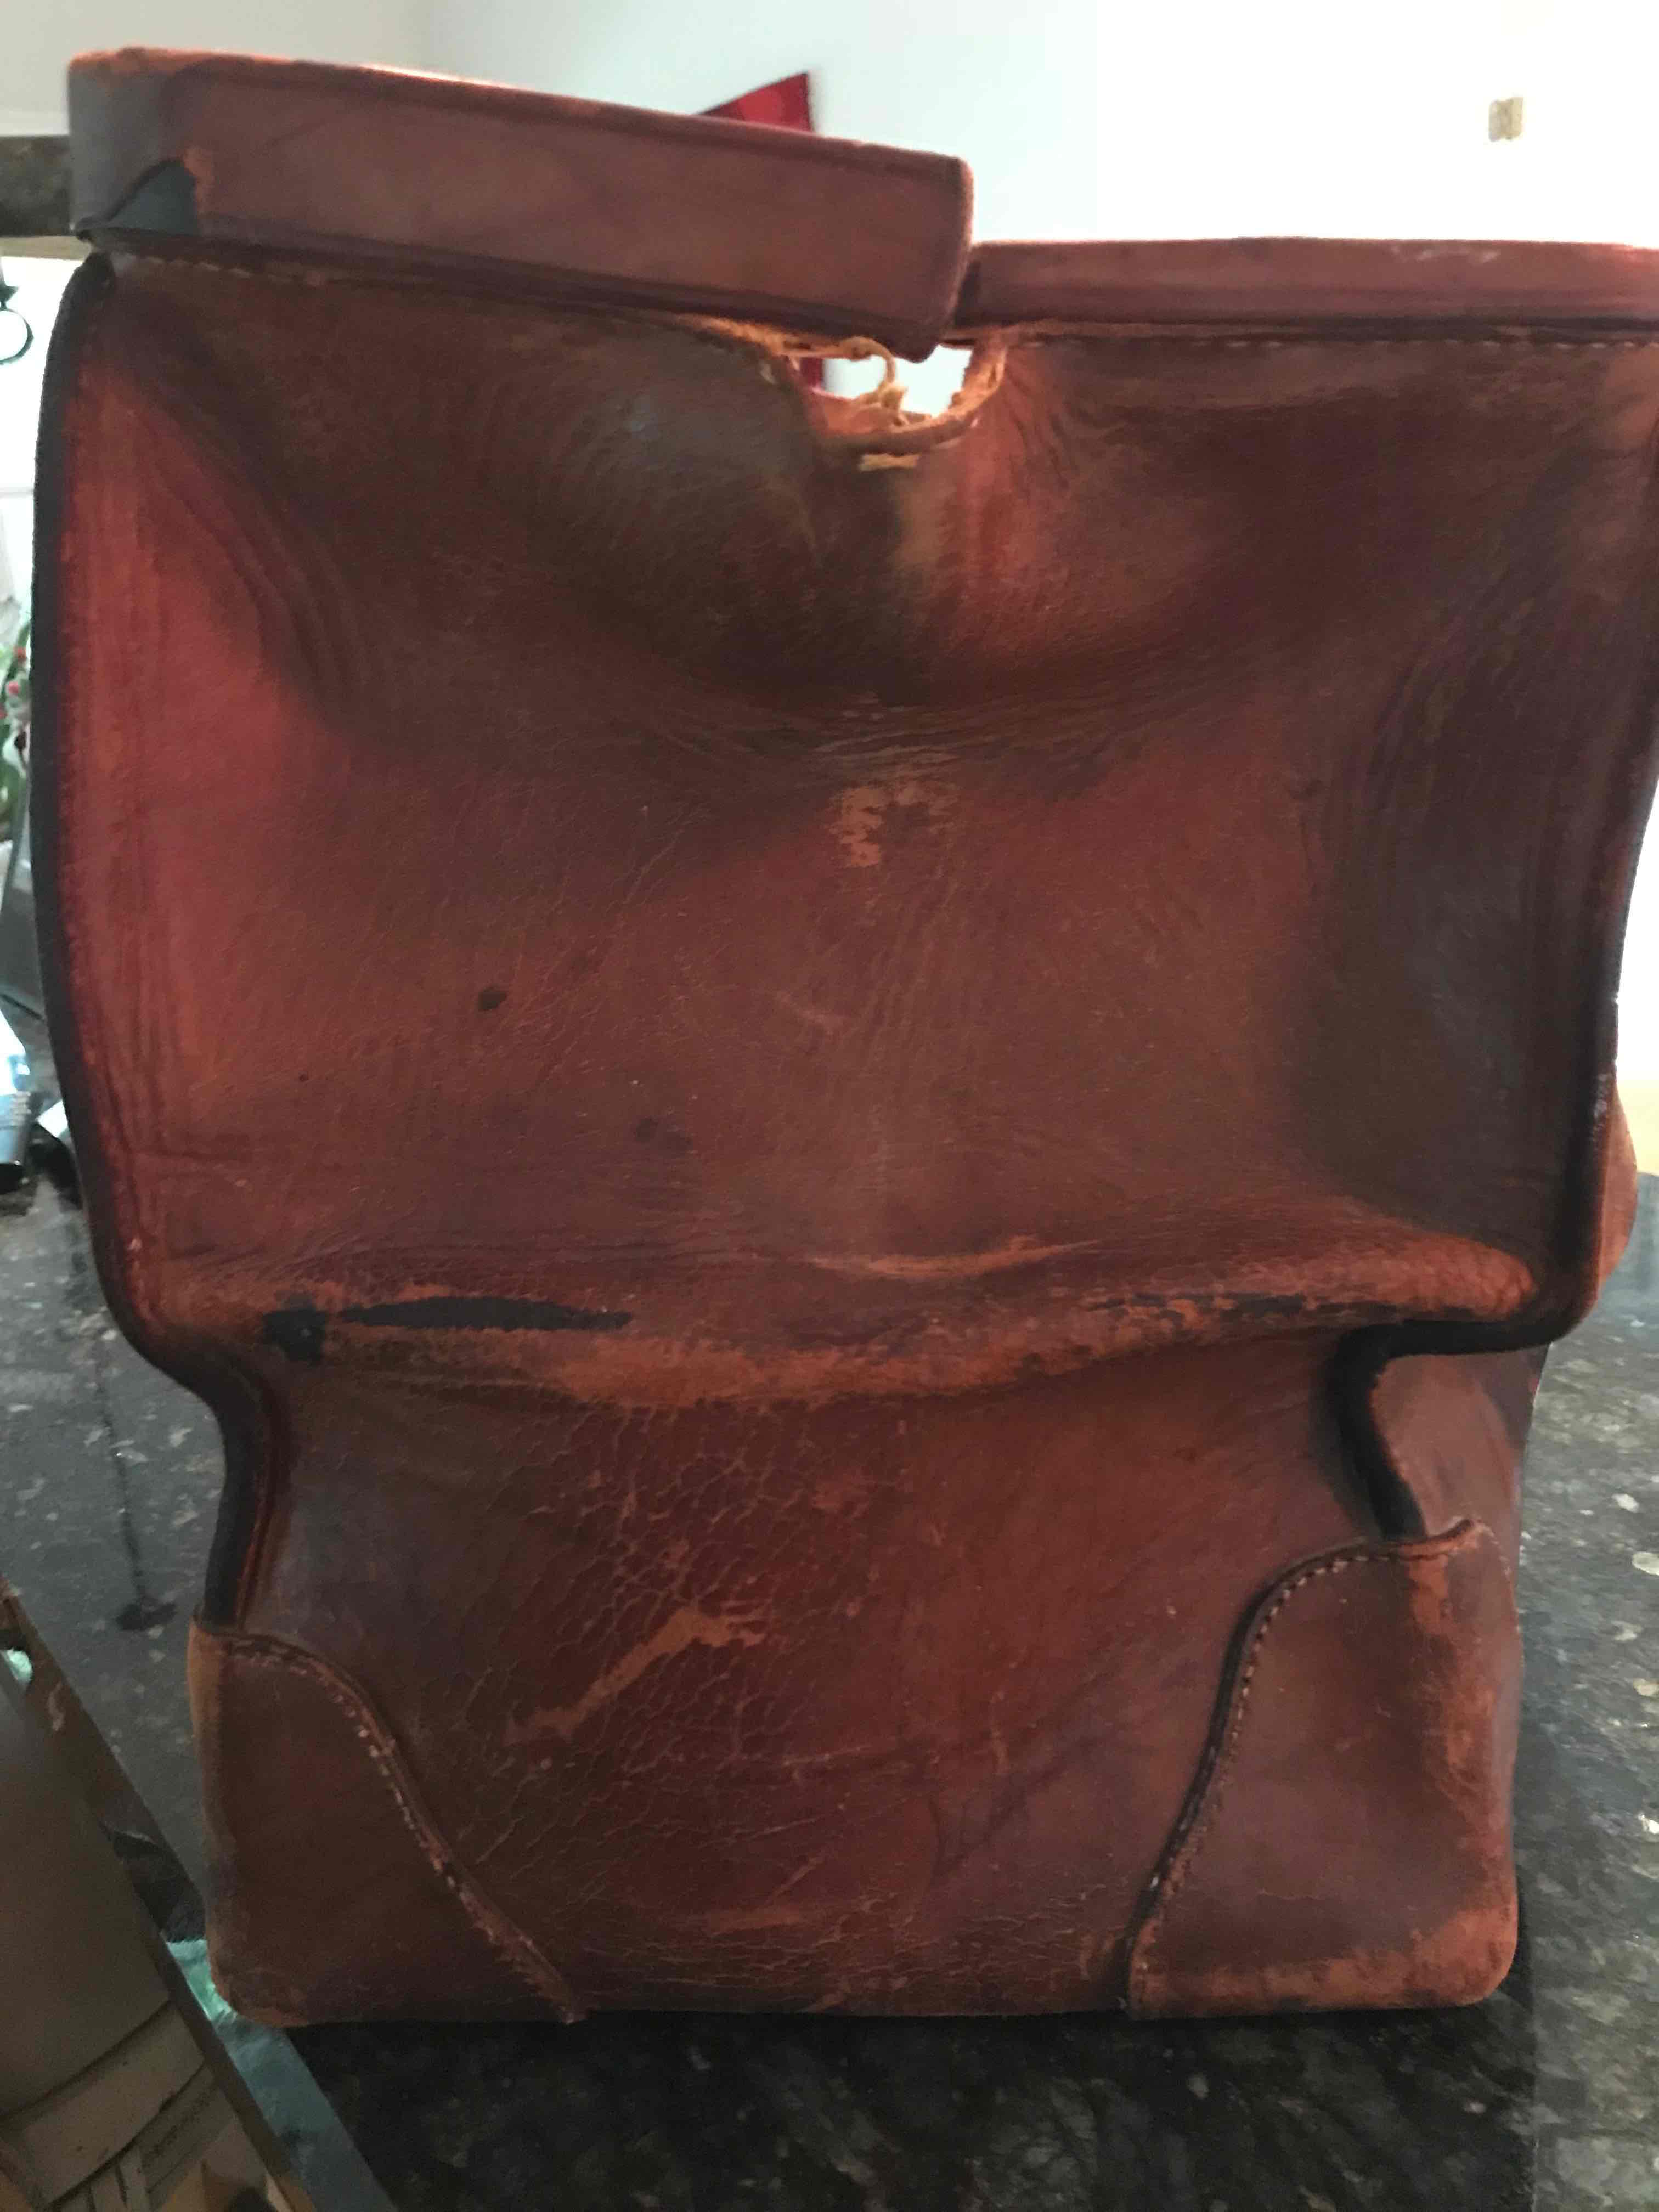 RESERVED Gladstone Bag / Doctors Bag / Antique Leather 